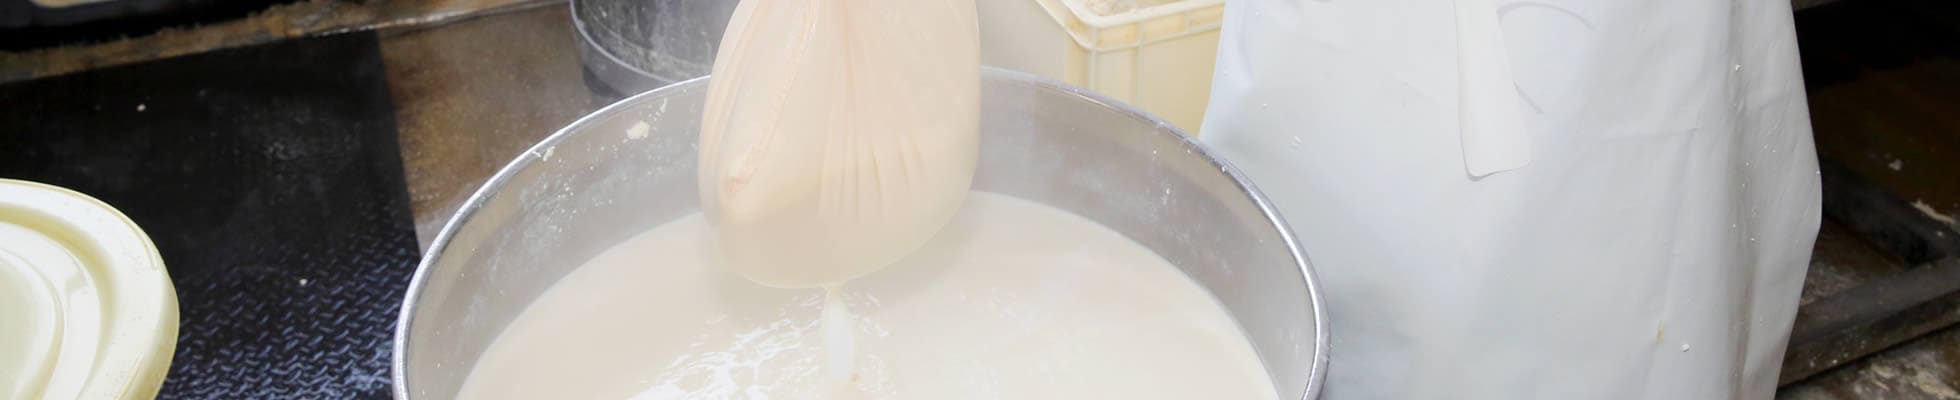 柔らか絞り製法で作るおいしい豆乳